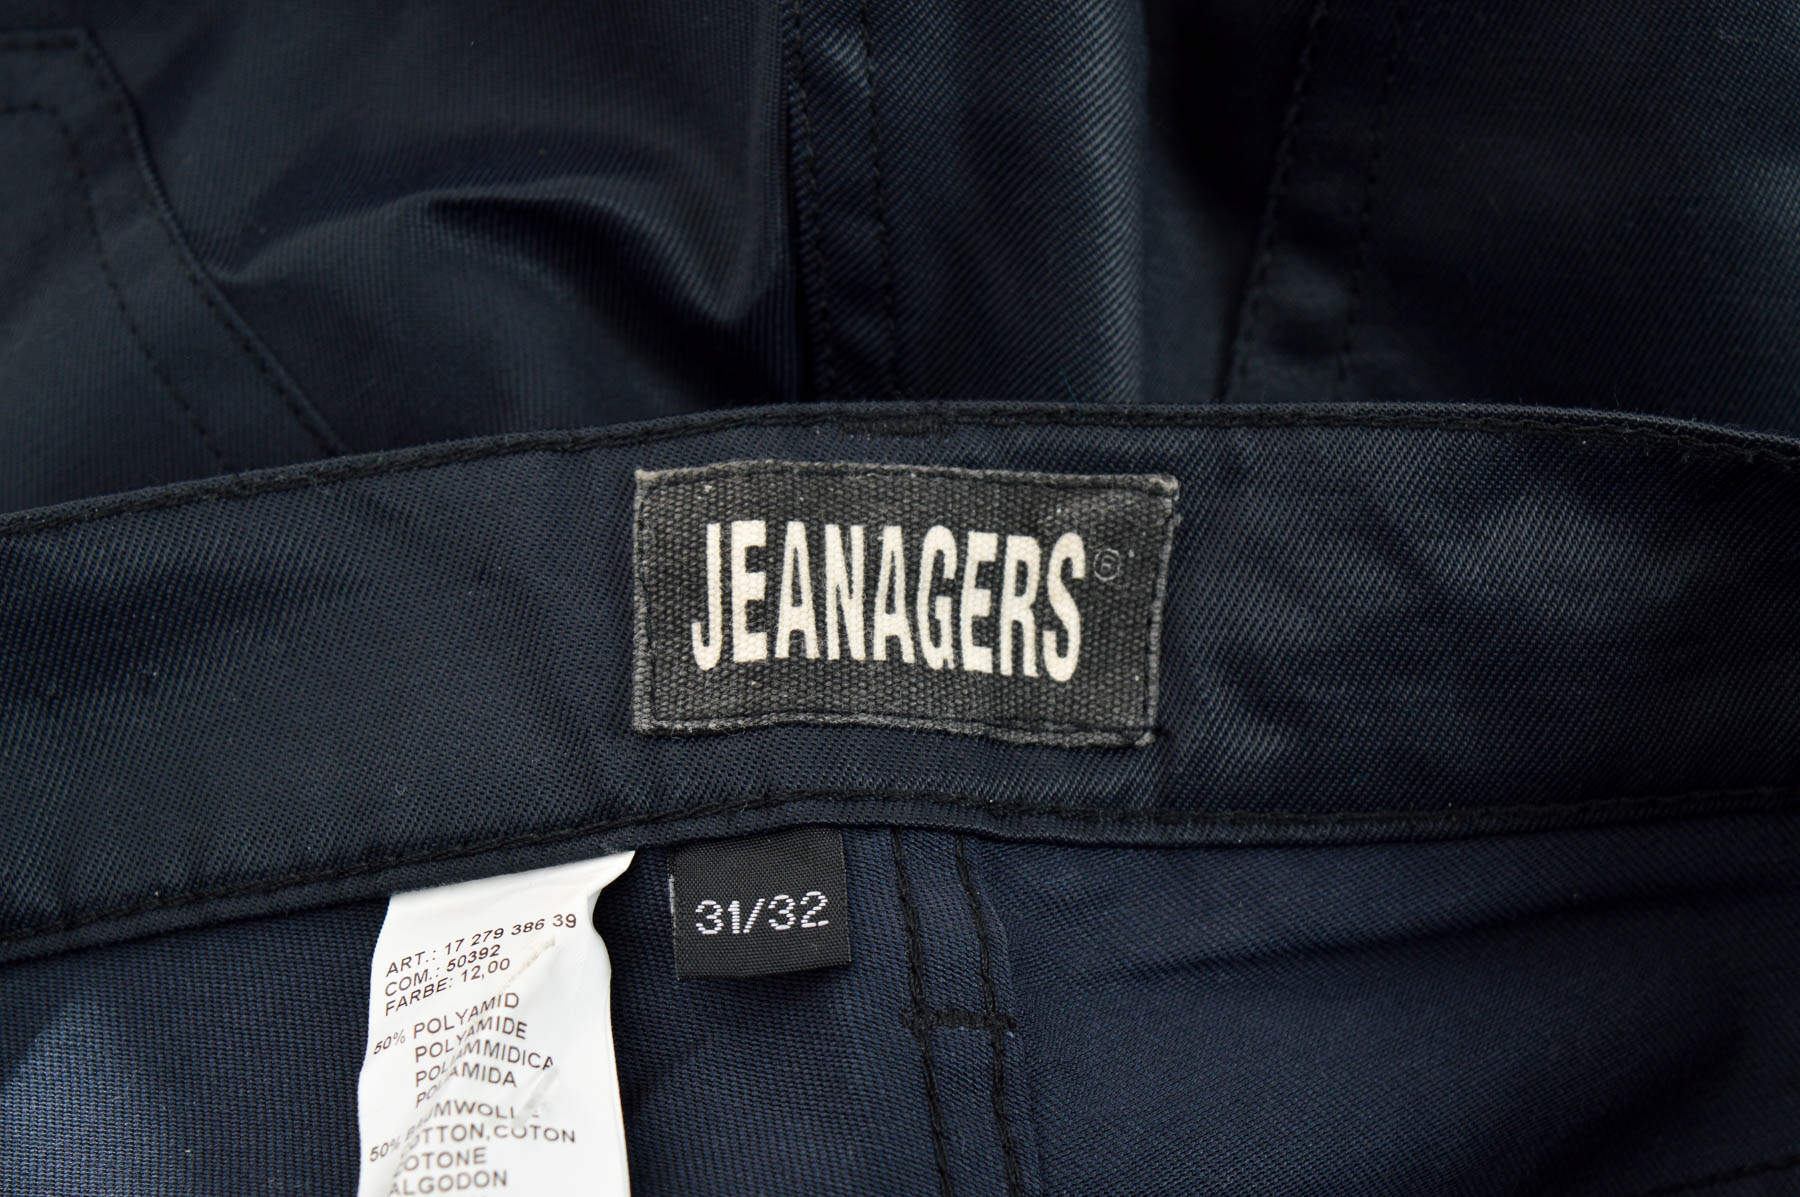 Ανδρικά παντελόνια - Jeanagers - 2